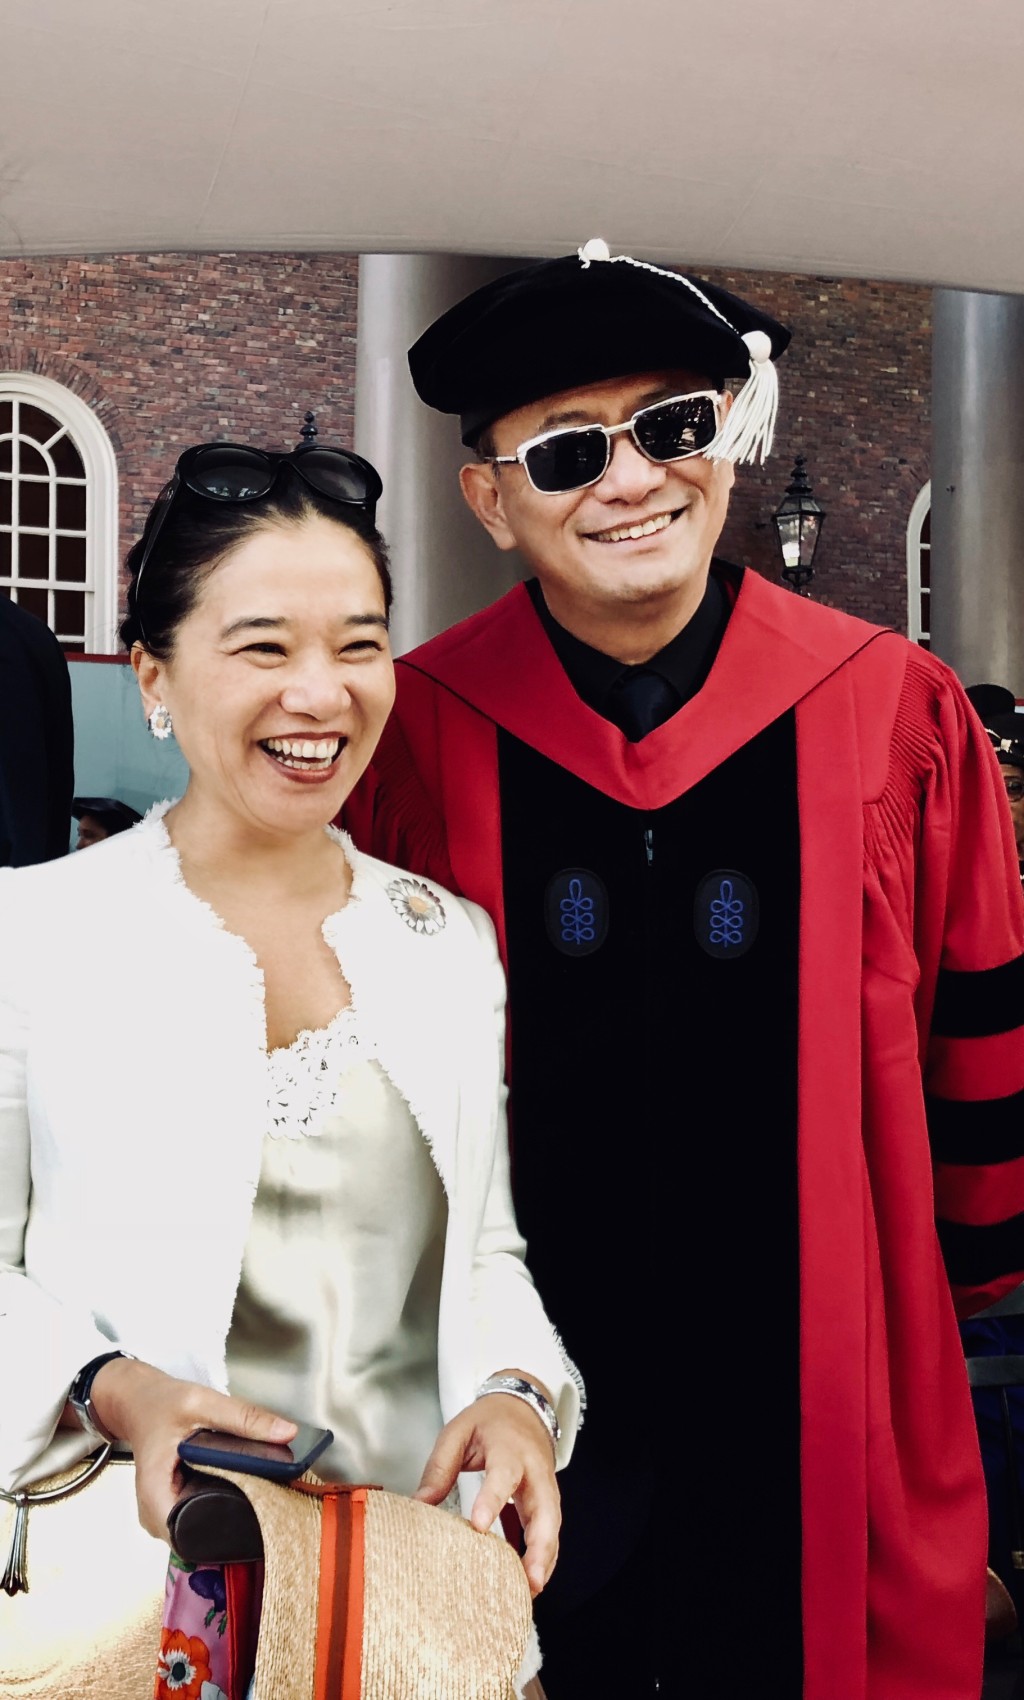 王家卫2018年获美国哈佛大学授予文学荣誉博士学位，成为史上第一位获此殊荣的亚洲导演。